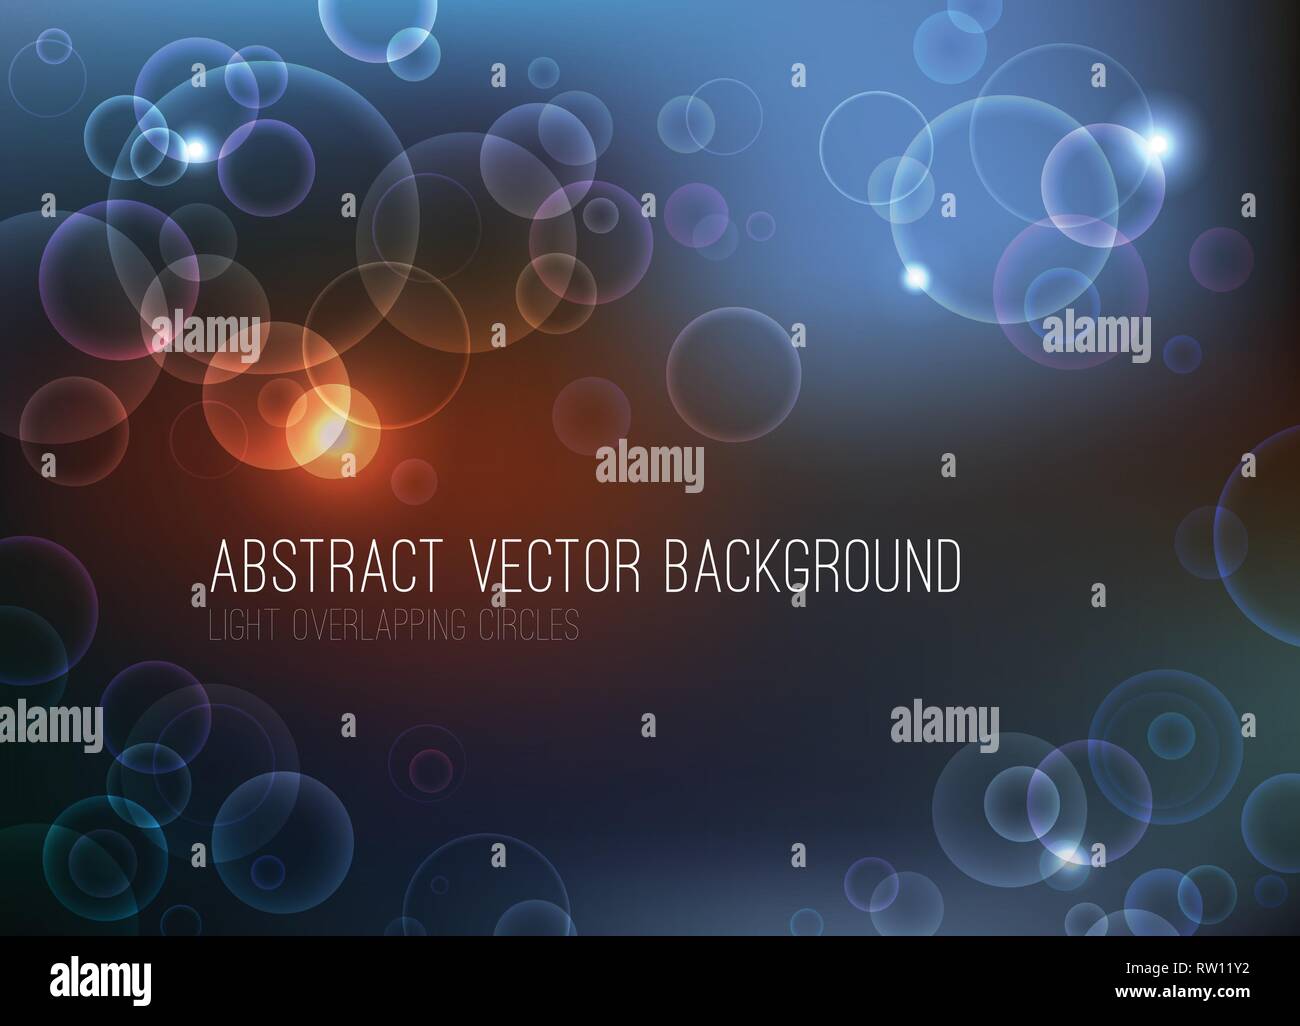 Abstrakte bokeh vector Hintergrund. Überlappende Kreise mit Licht auf dunklem Hintergrund. Eps 10-Datei. Stock Vektor